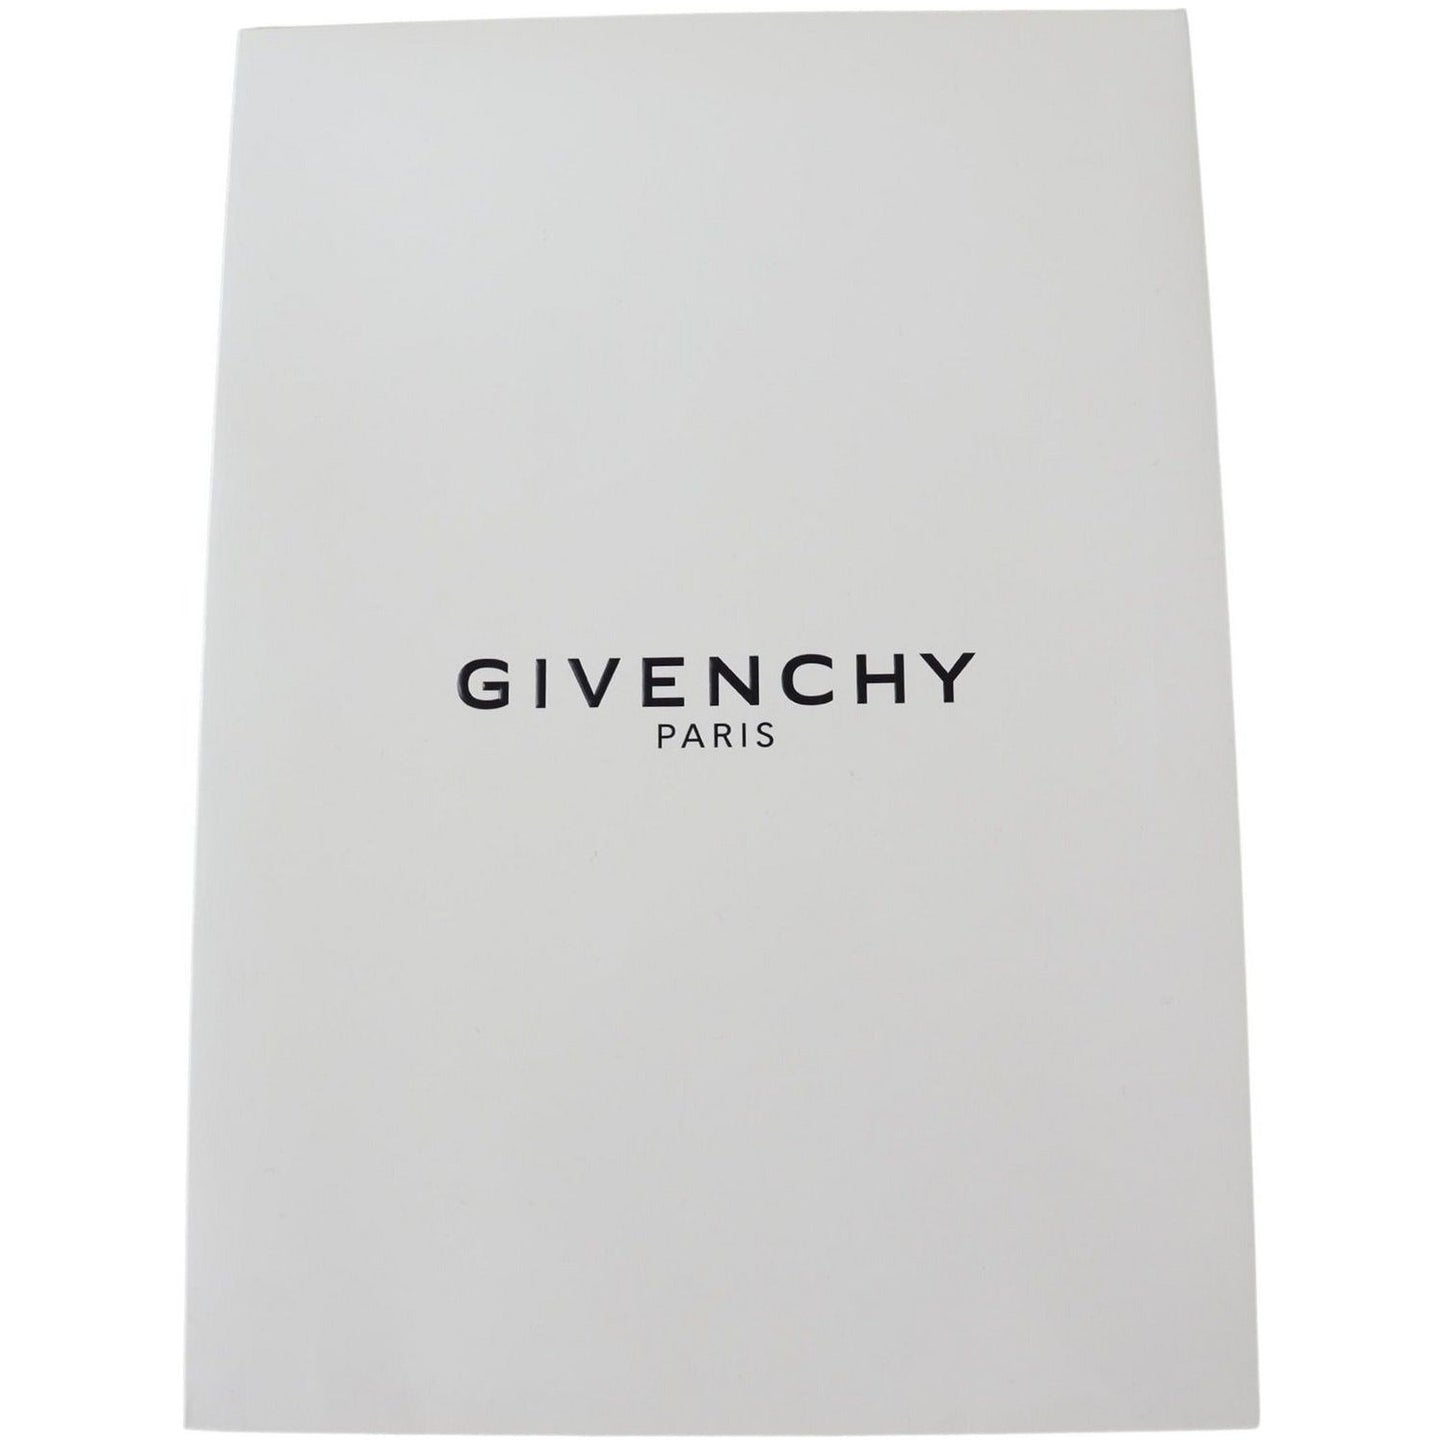 Givenchy Elegant Monochrome Wool-Silk Blend Scarf Wool Wrap Shawls black-white-wool-unisex-winter-warm-scarf-wrap-shawl IMG_7466-51759e19-841.jpg